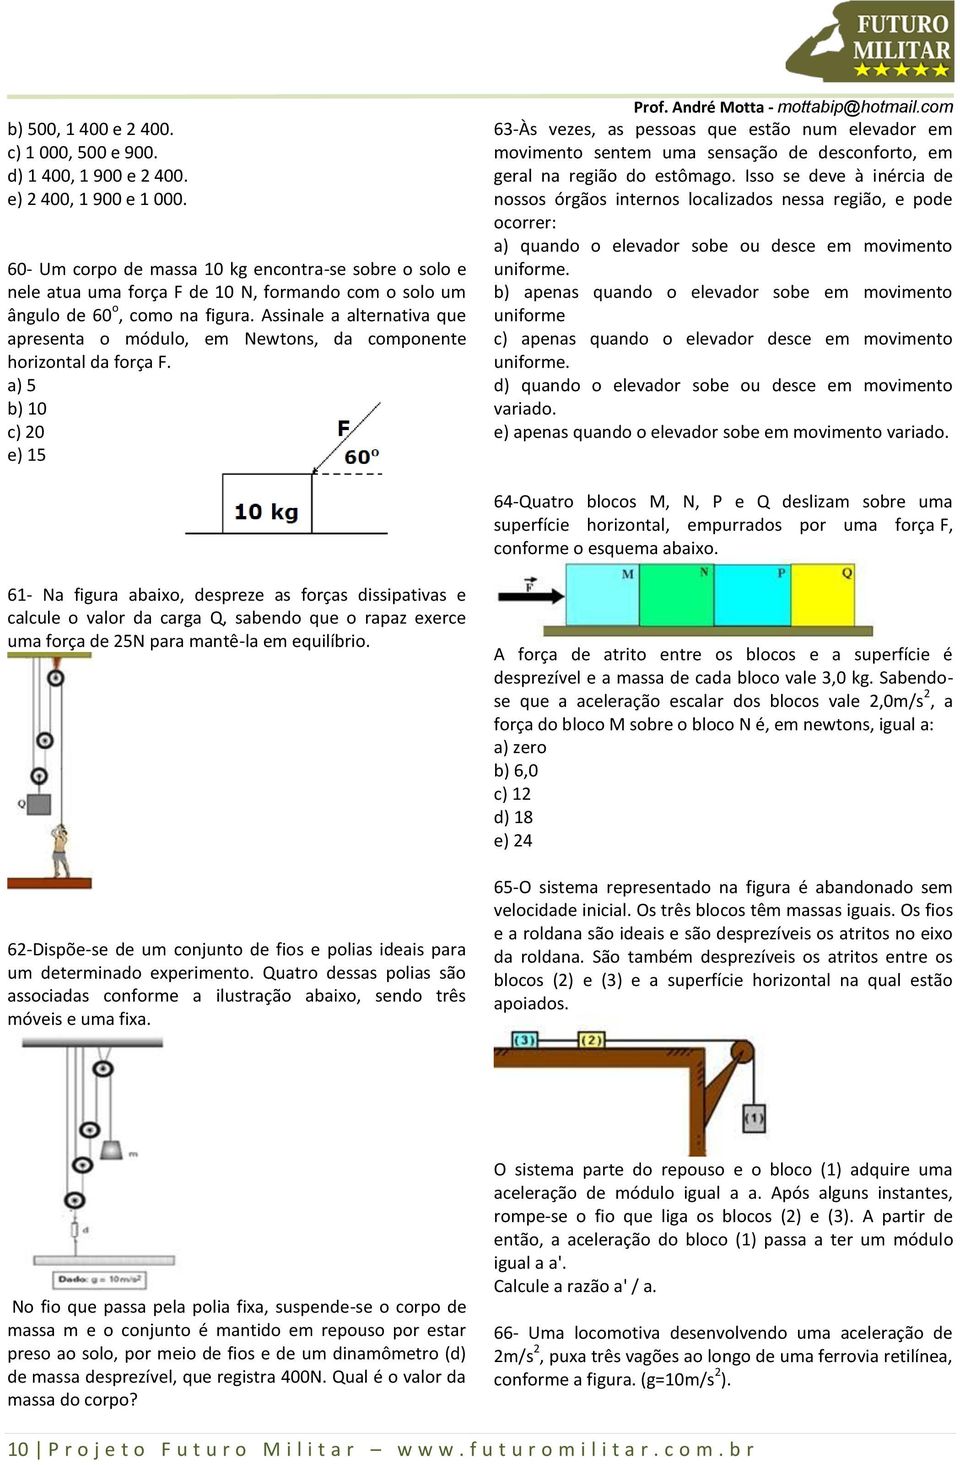 ssinale a alternativa que apresenta o módulo, em Newtons, da componente horizontal da força F.